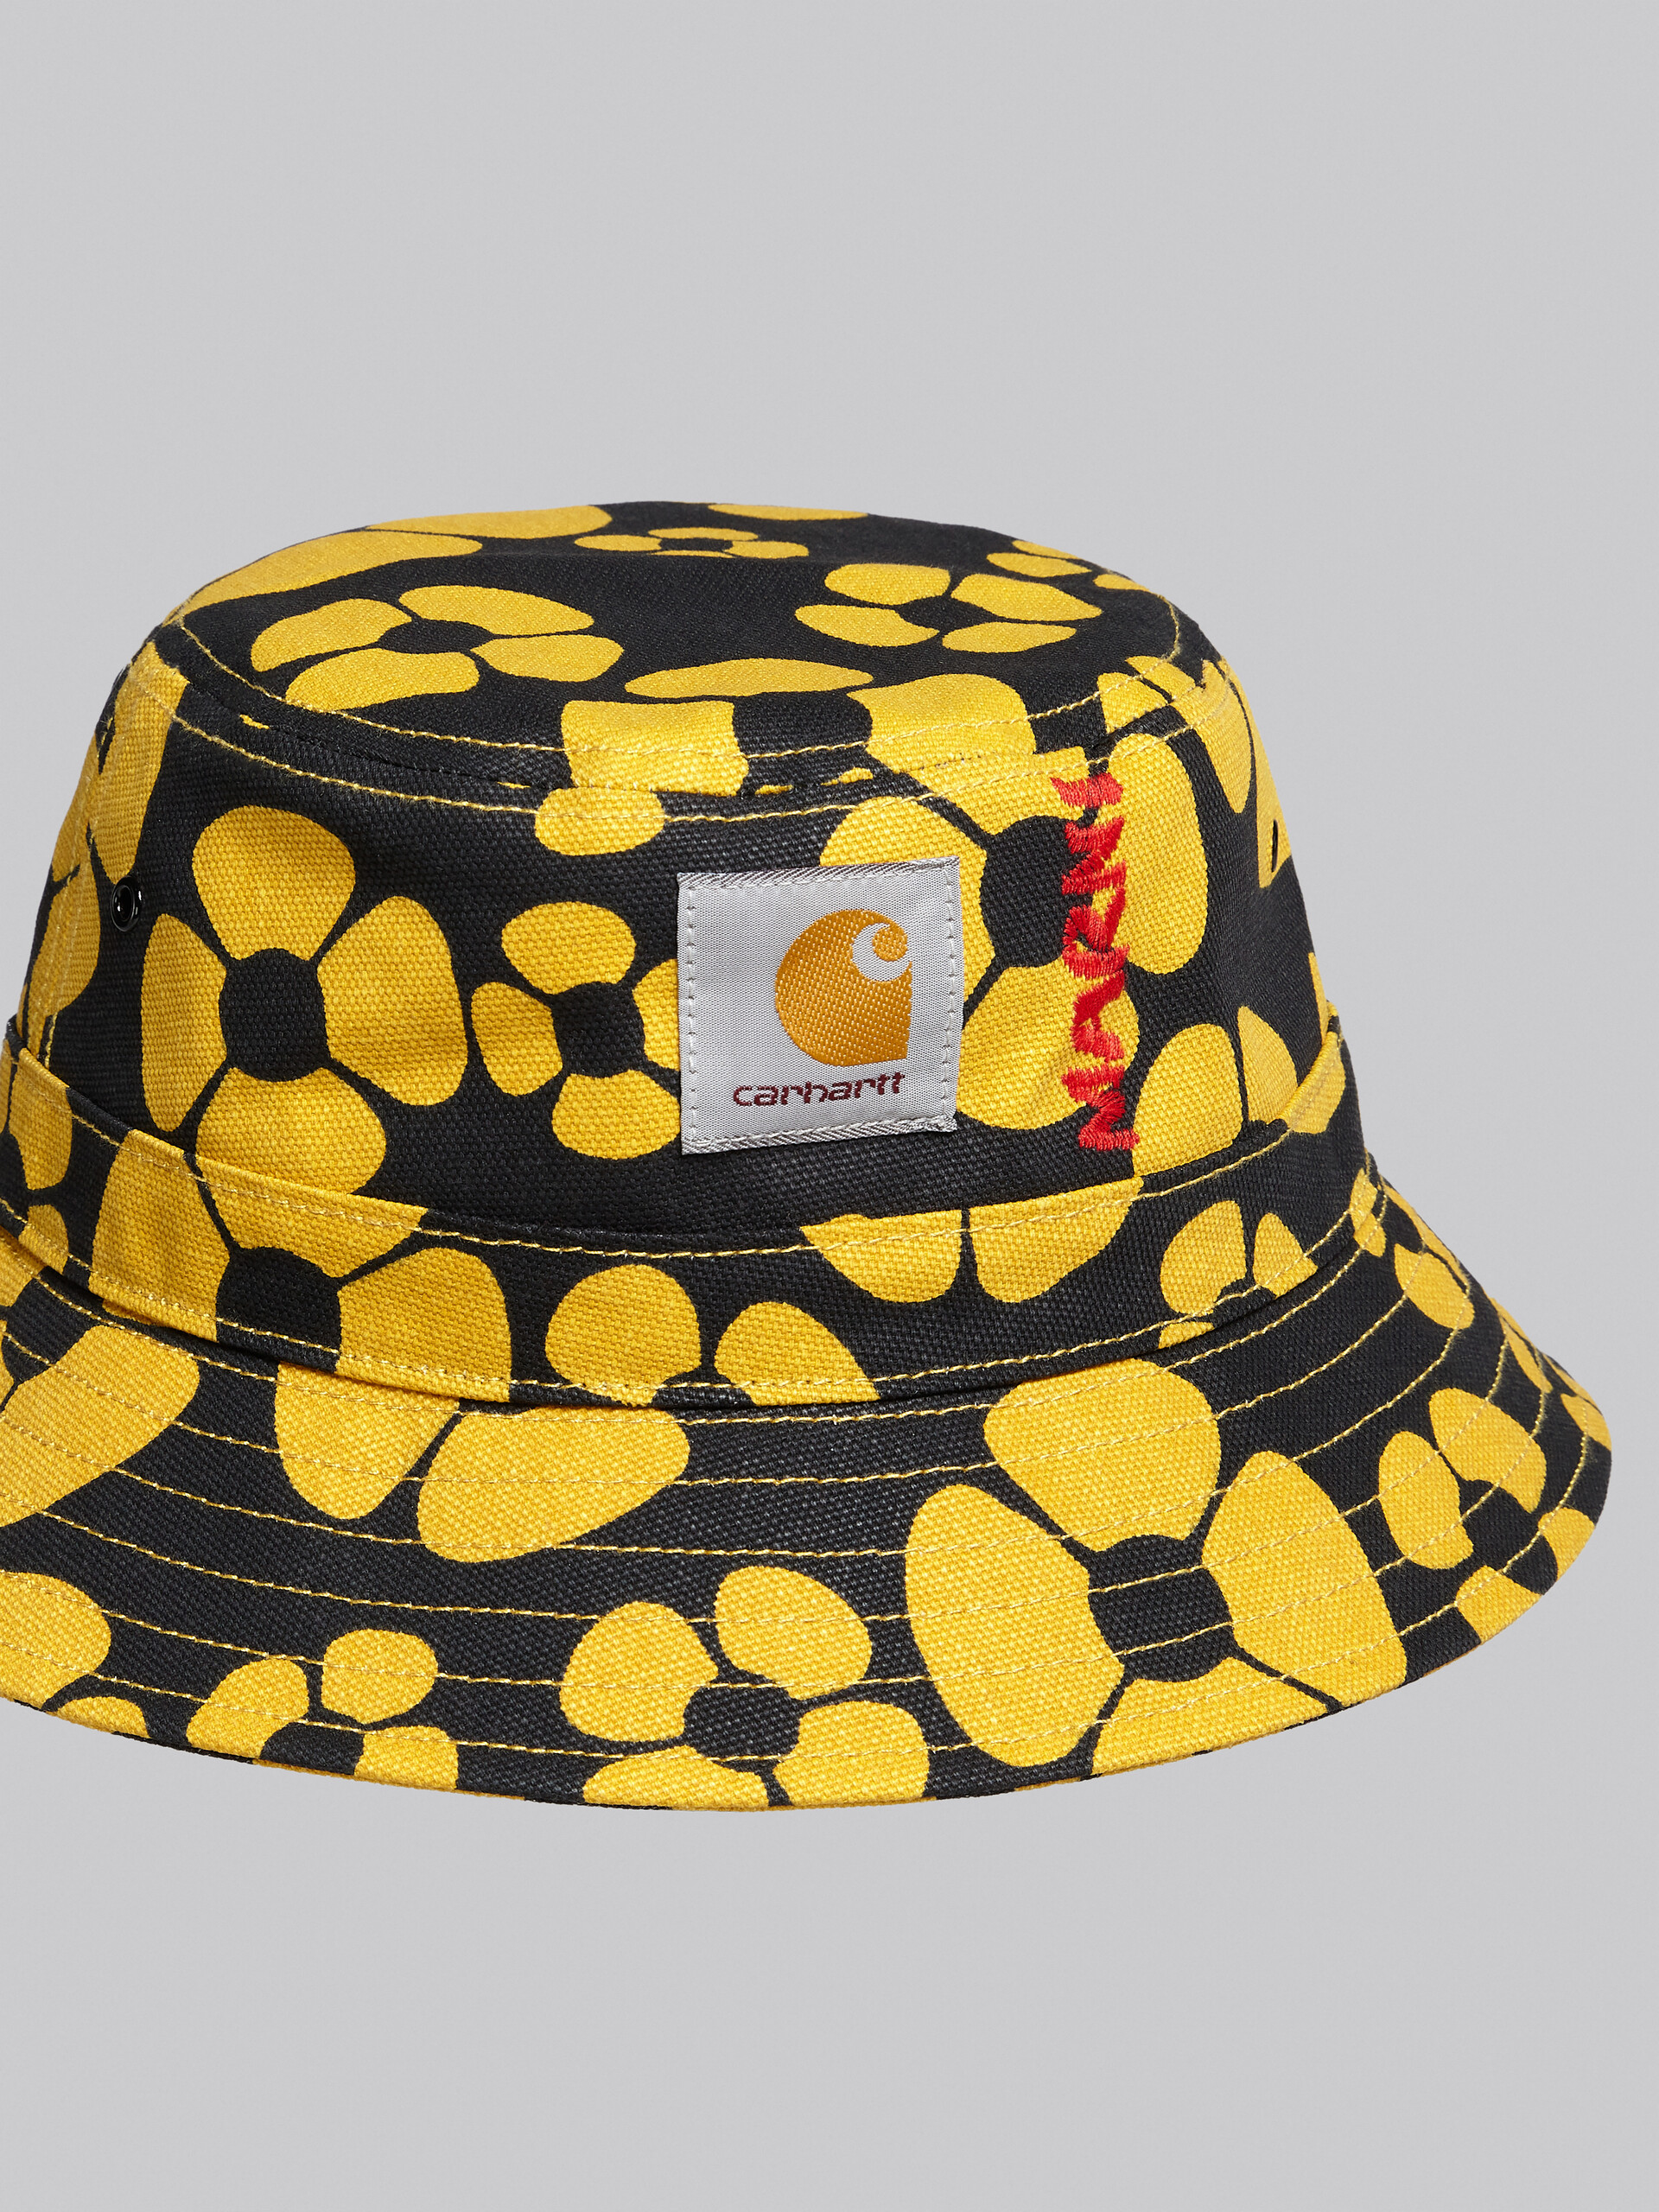 MARNI x CARHARTT WIP - yellow bucket hat - Hats - Image 4